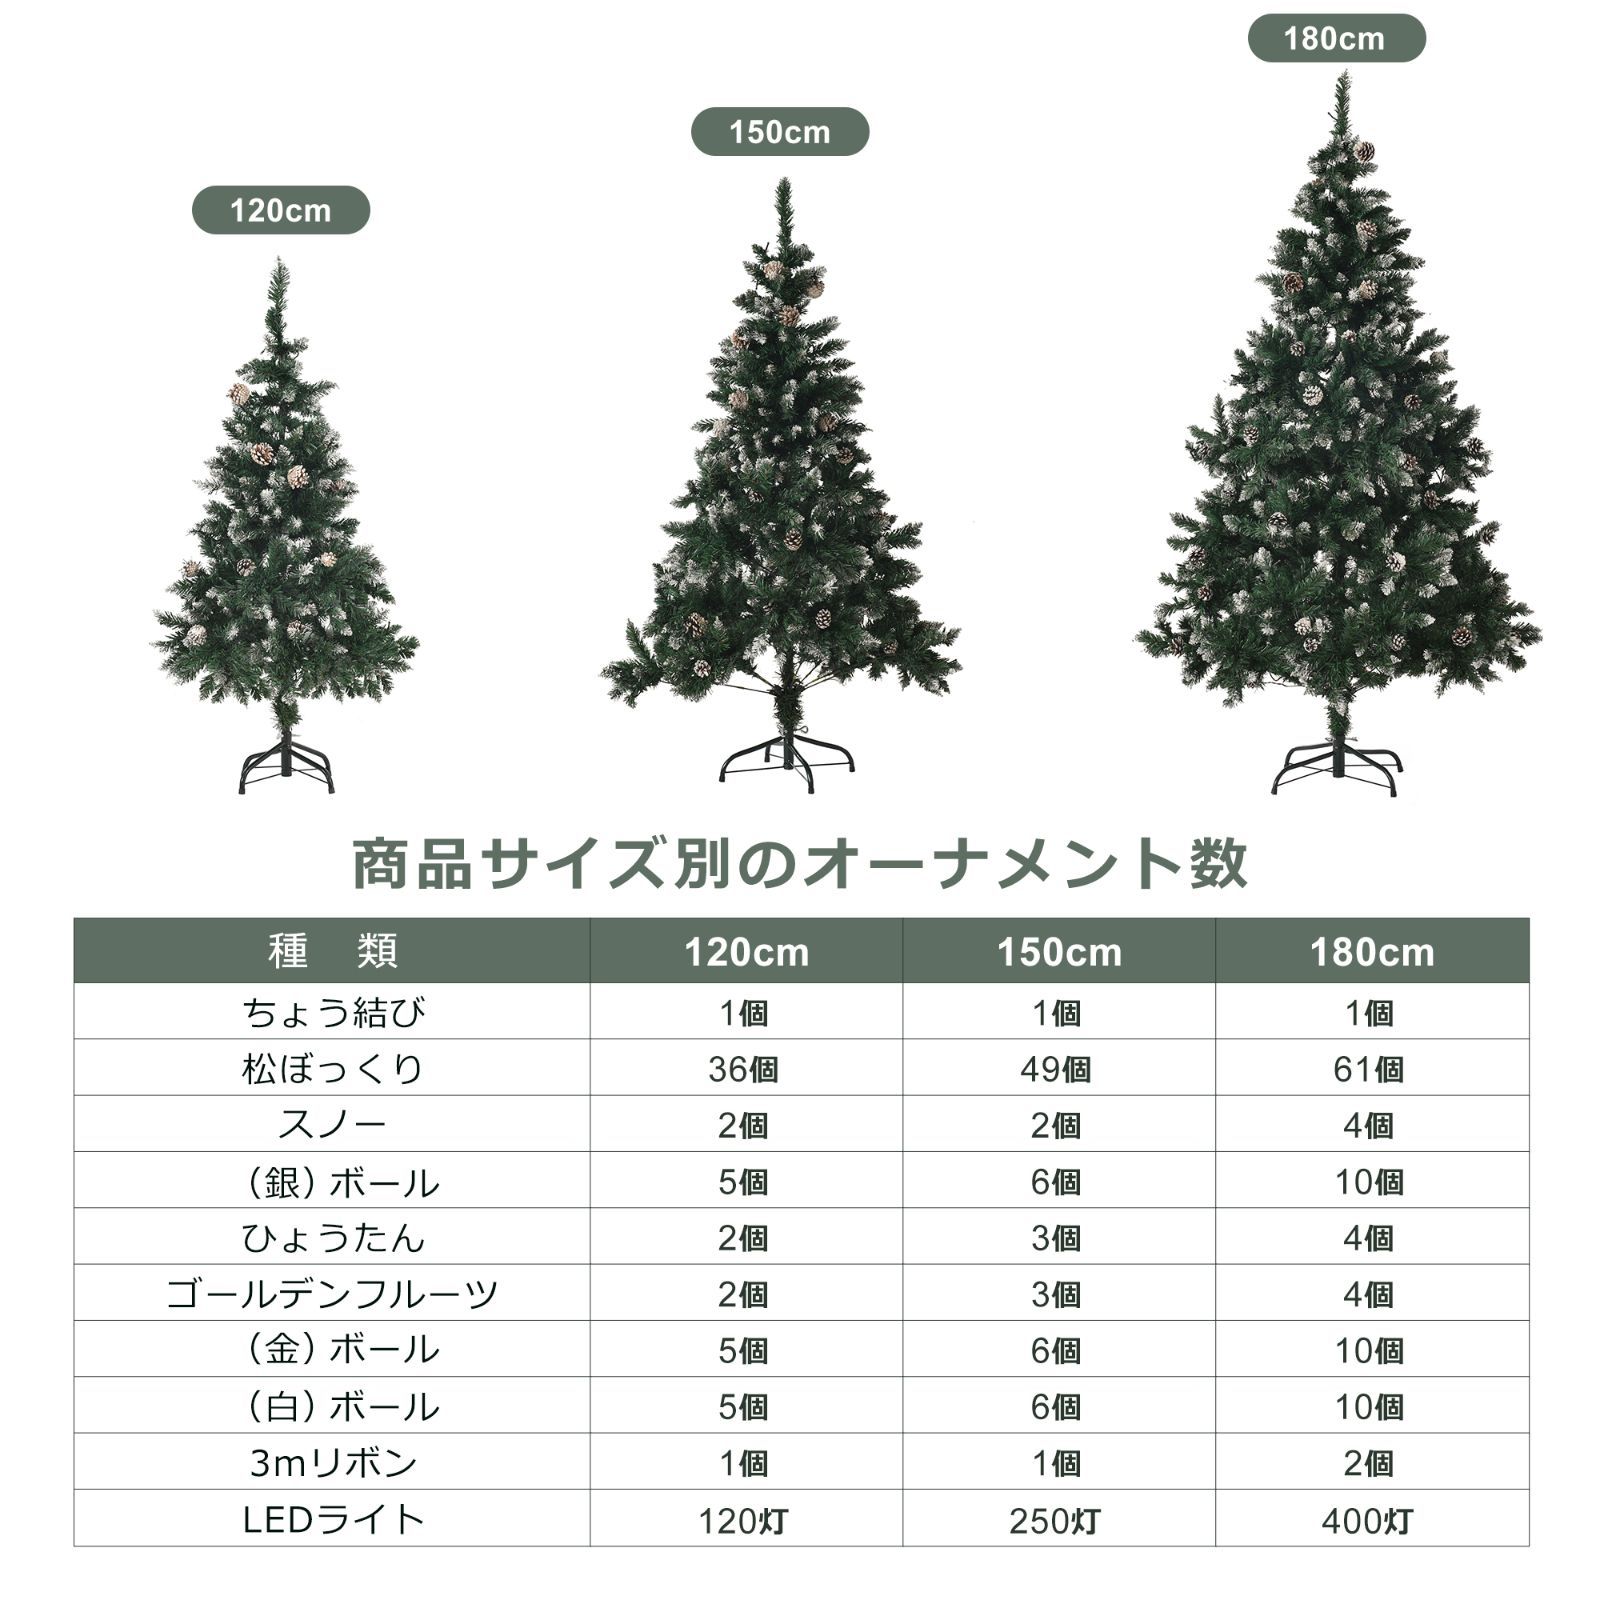 クリスマスツリー 120cm スチール脚 おしゃれ 北欧セット LED